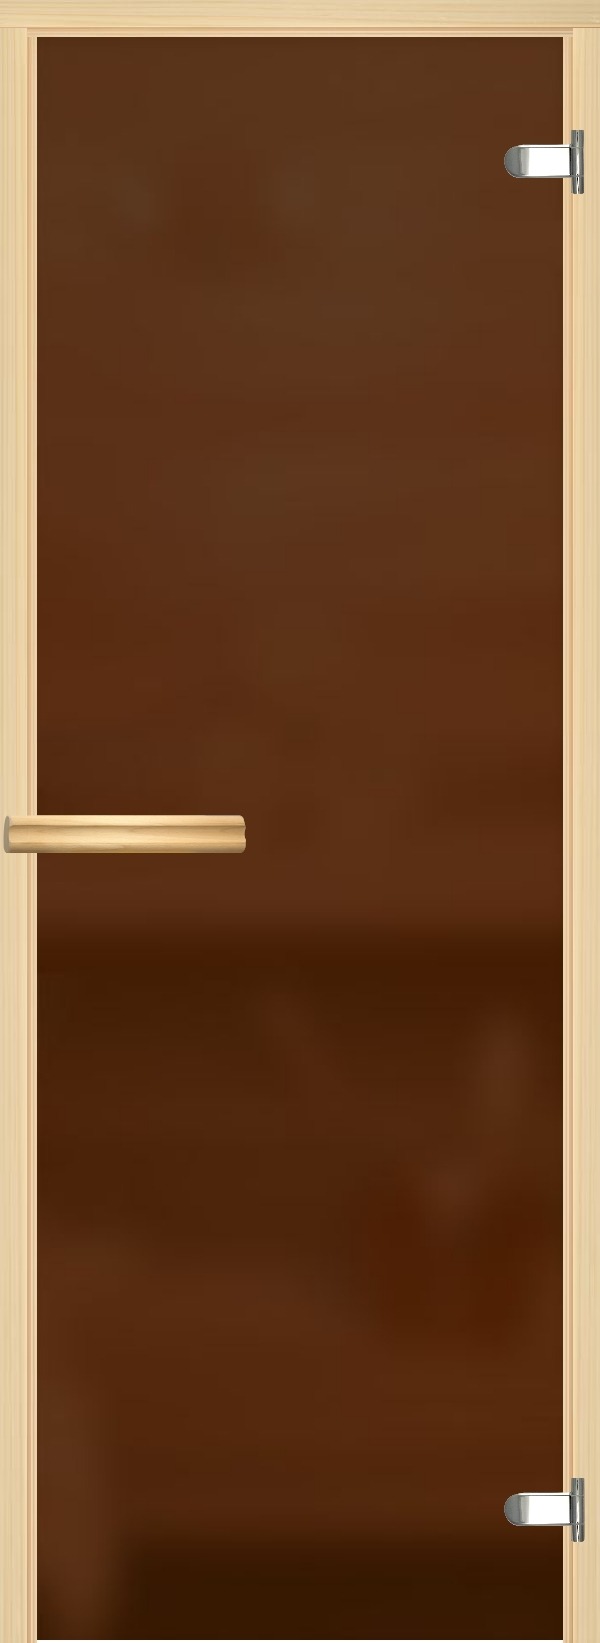 АКМА Дверь Бронза матовая, осина Joto., 690*1890мм, петли хром, ручка дерево-магнит, С ПОРОГОМ